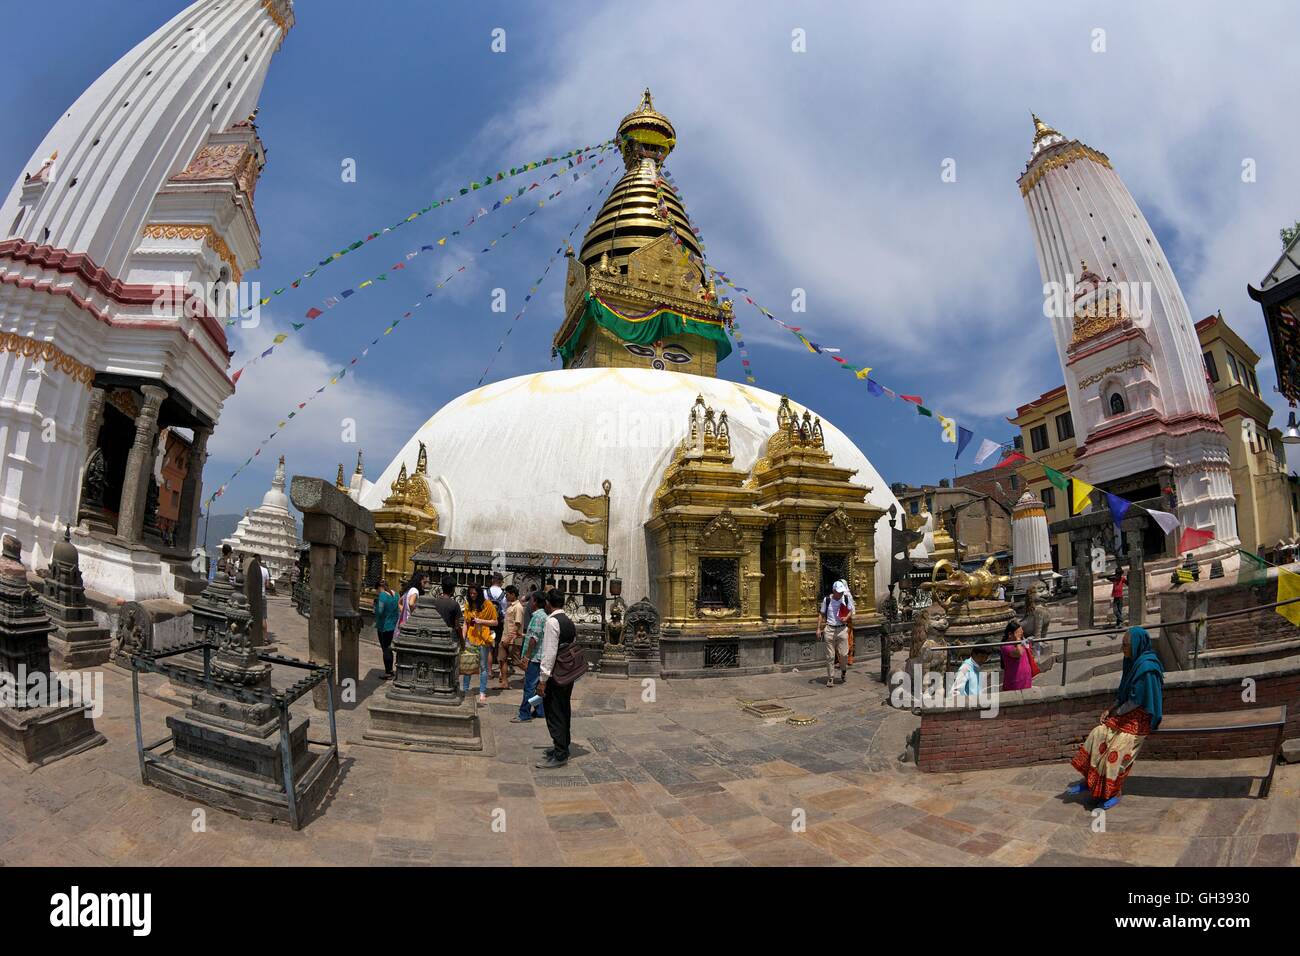 Swayambhunath Stupa or Monkey Temple, Kathmandu, Nepal, Asia Stock Photo